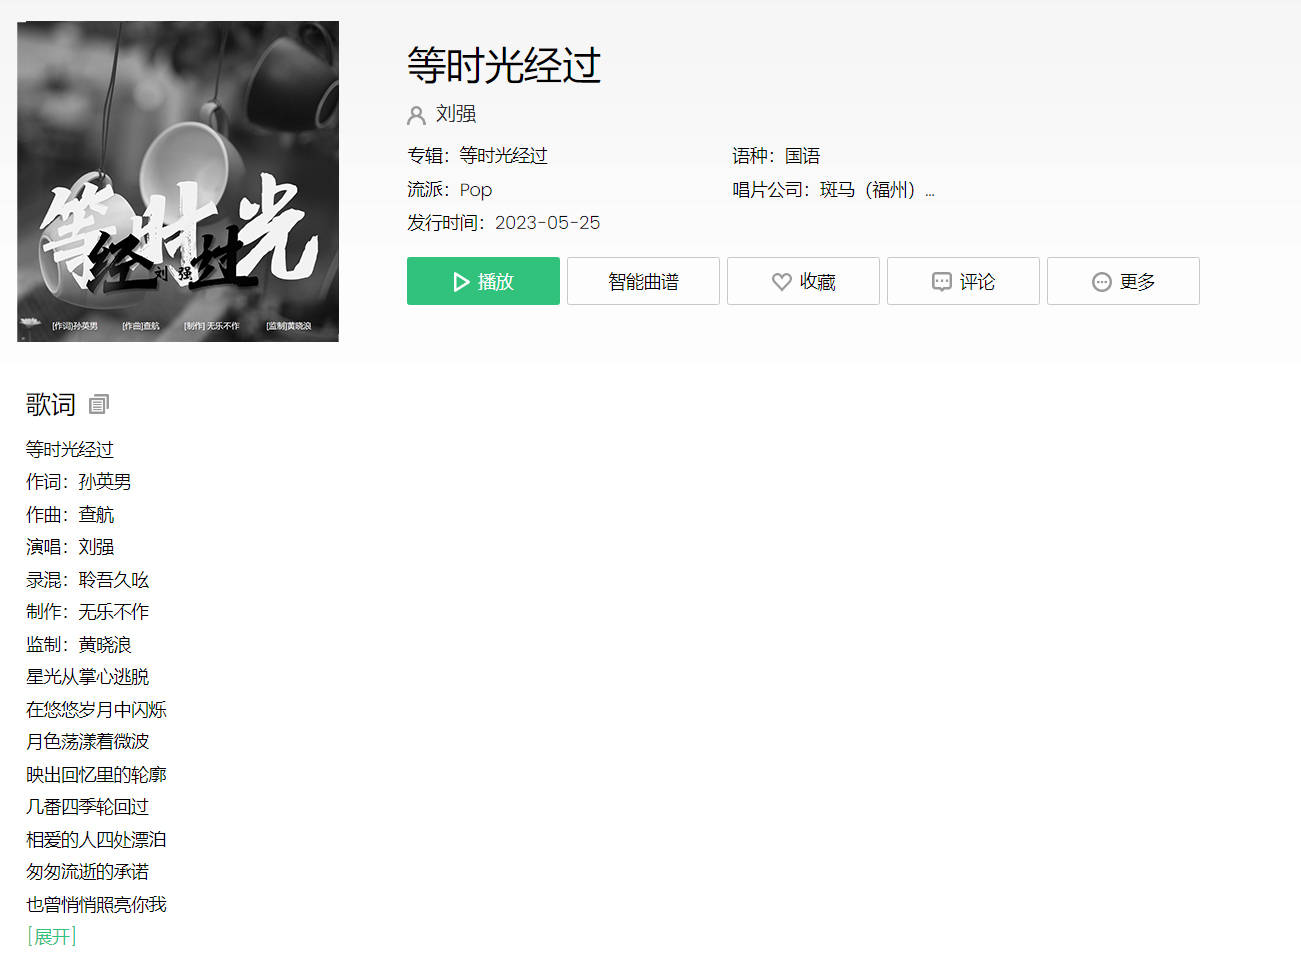 刘强最新歌曲《等时光经过》发行上线 由福州斑马音乐出品米乐m6(图1)